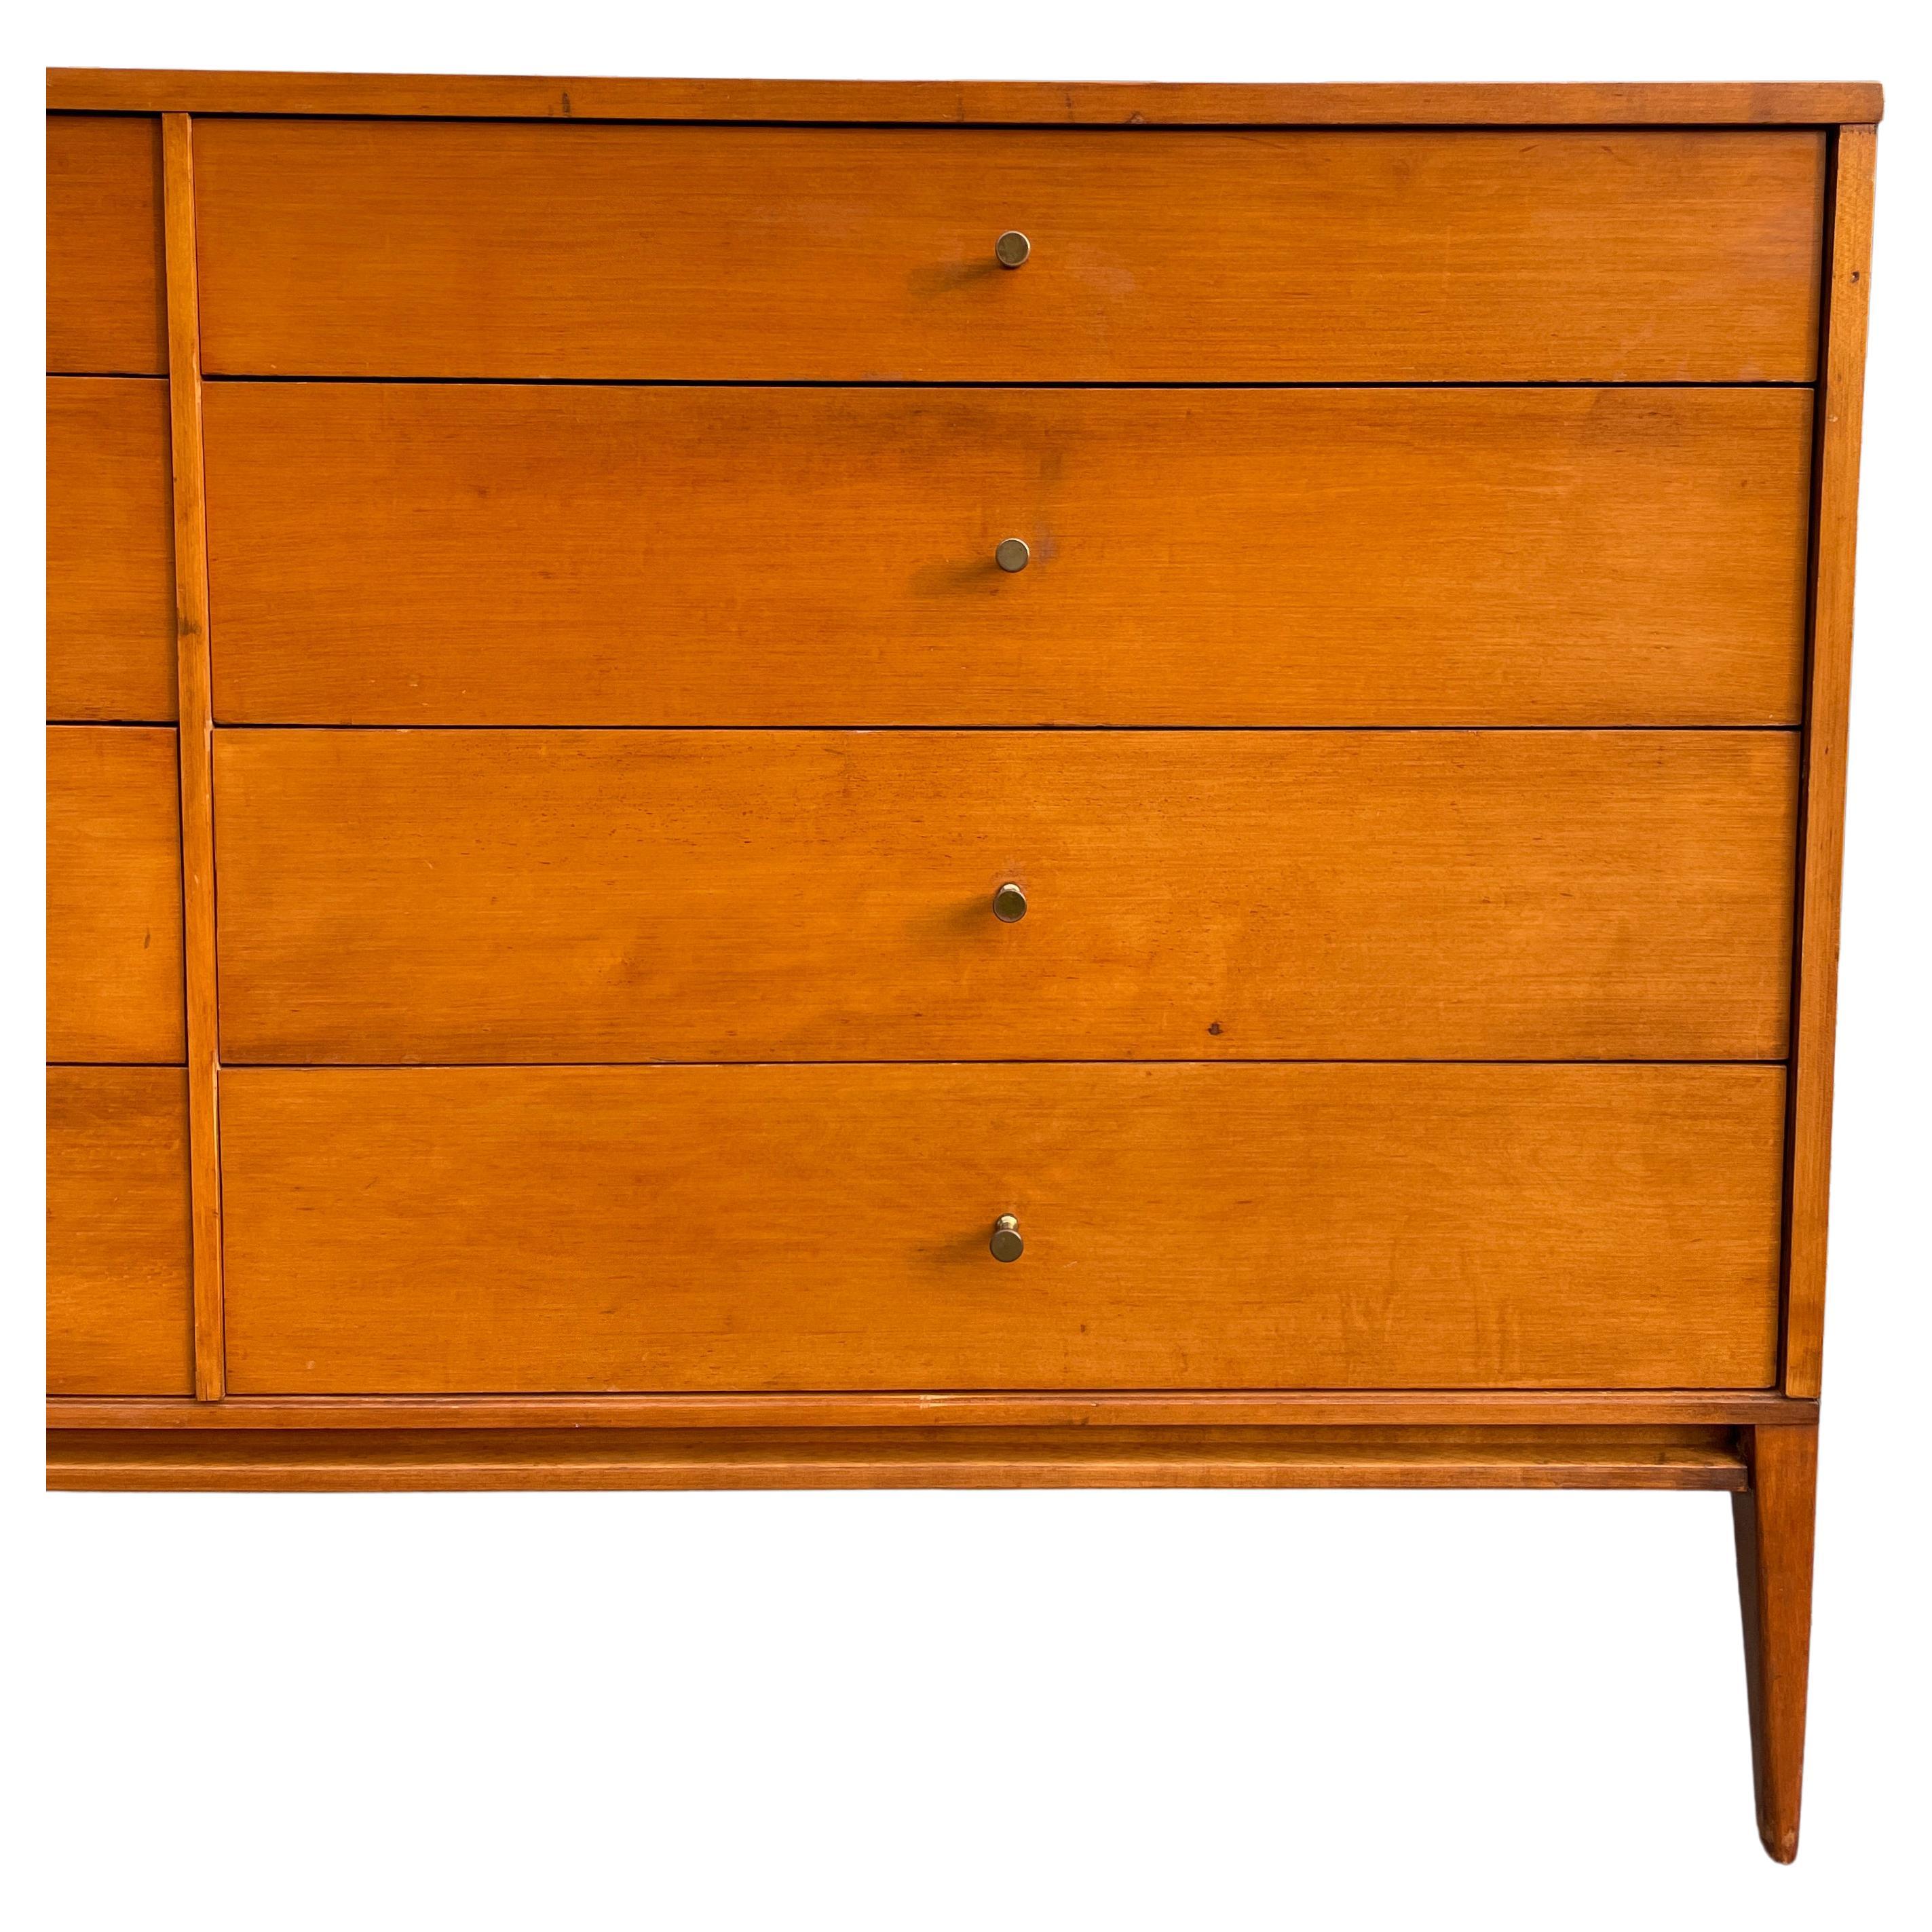 American Midcentury Paul McCobb 8-Drawer Dresser Credenza #1507 Blonde Maple Brass Pulls